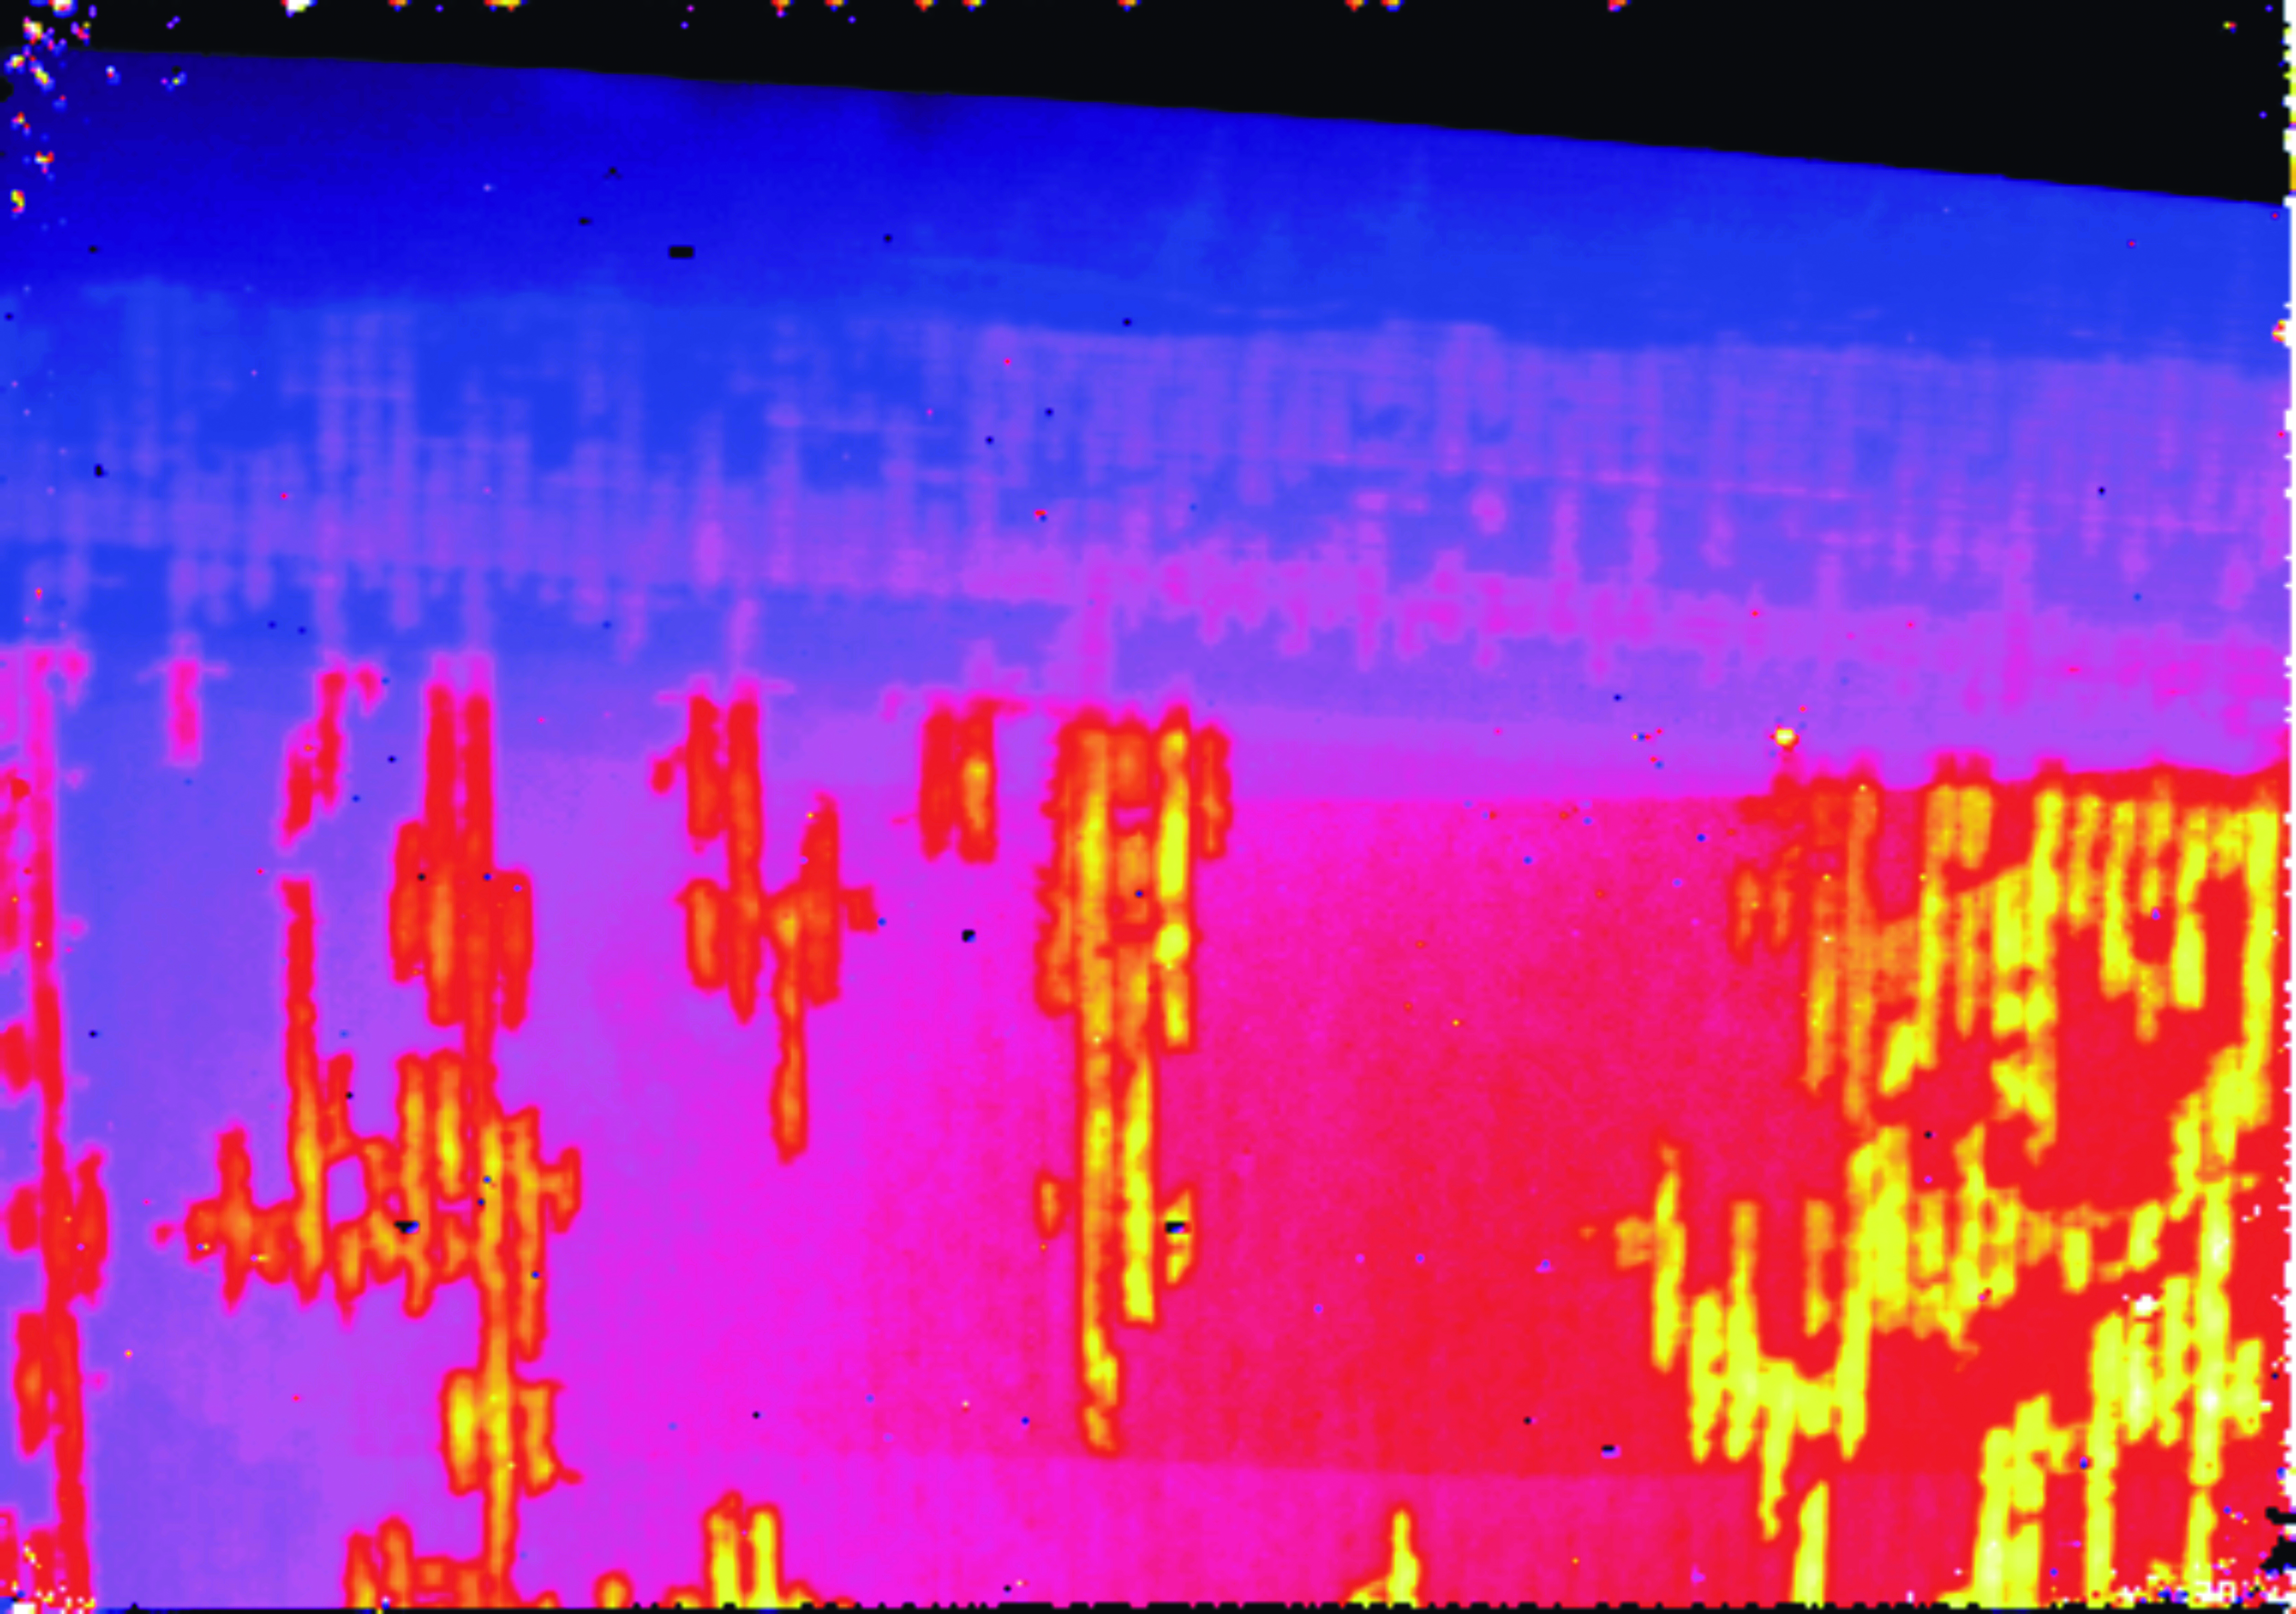 Thermographiebild zeigt Lufteinschlüssen